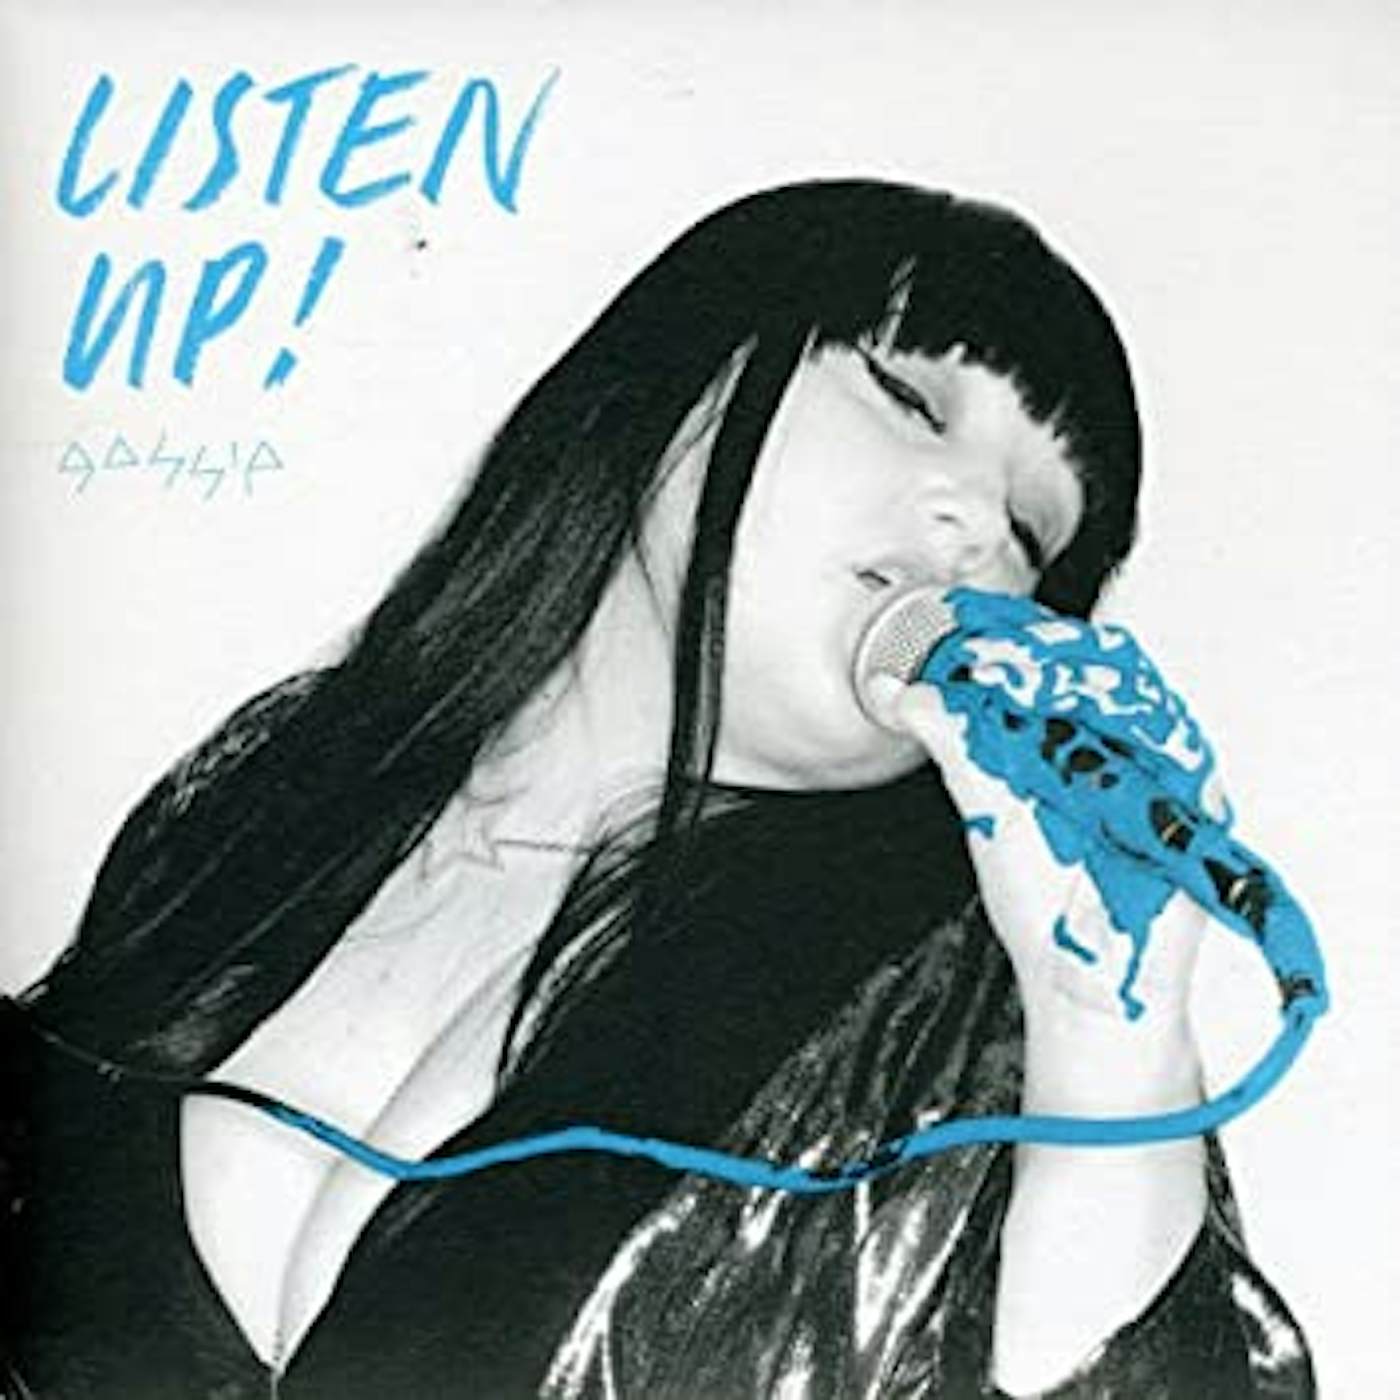 Gossip LISTEN UP PT. 1 Vinyl Record